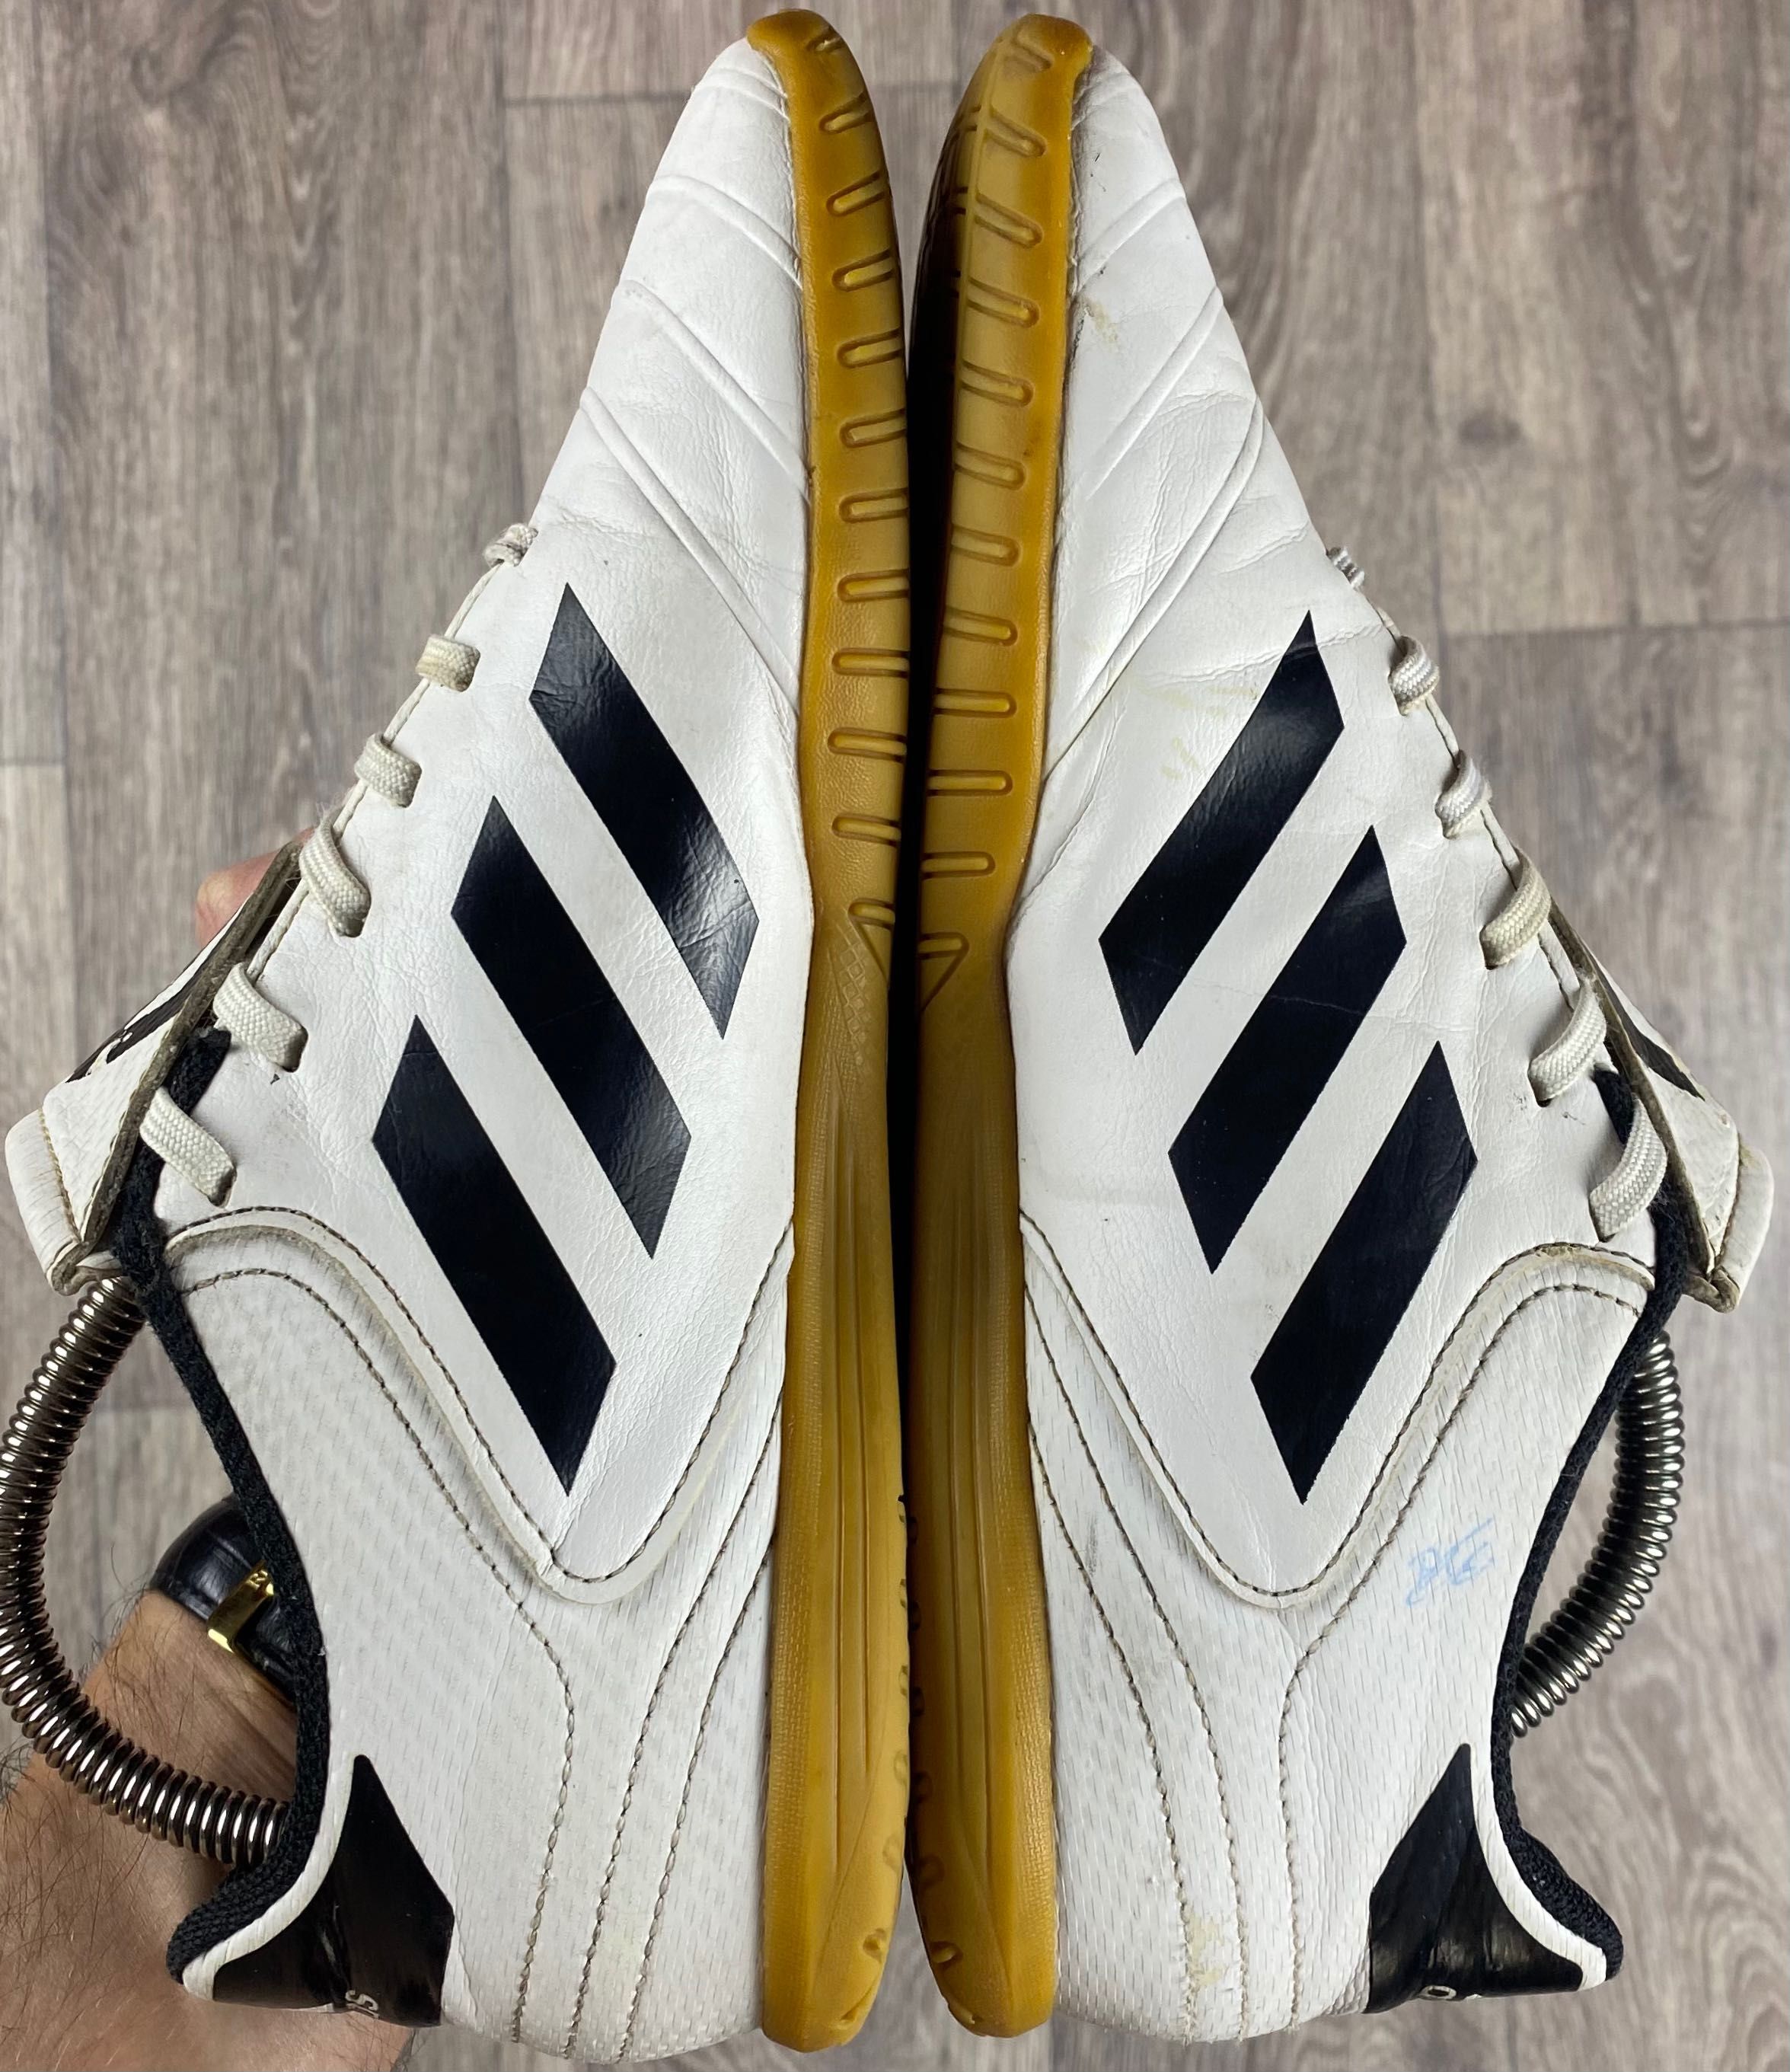 Adidas копы сороконожки бутсы 40 размер футбольные кожаные оригинал